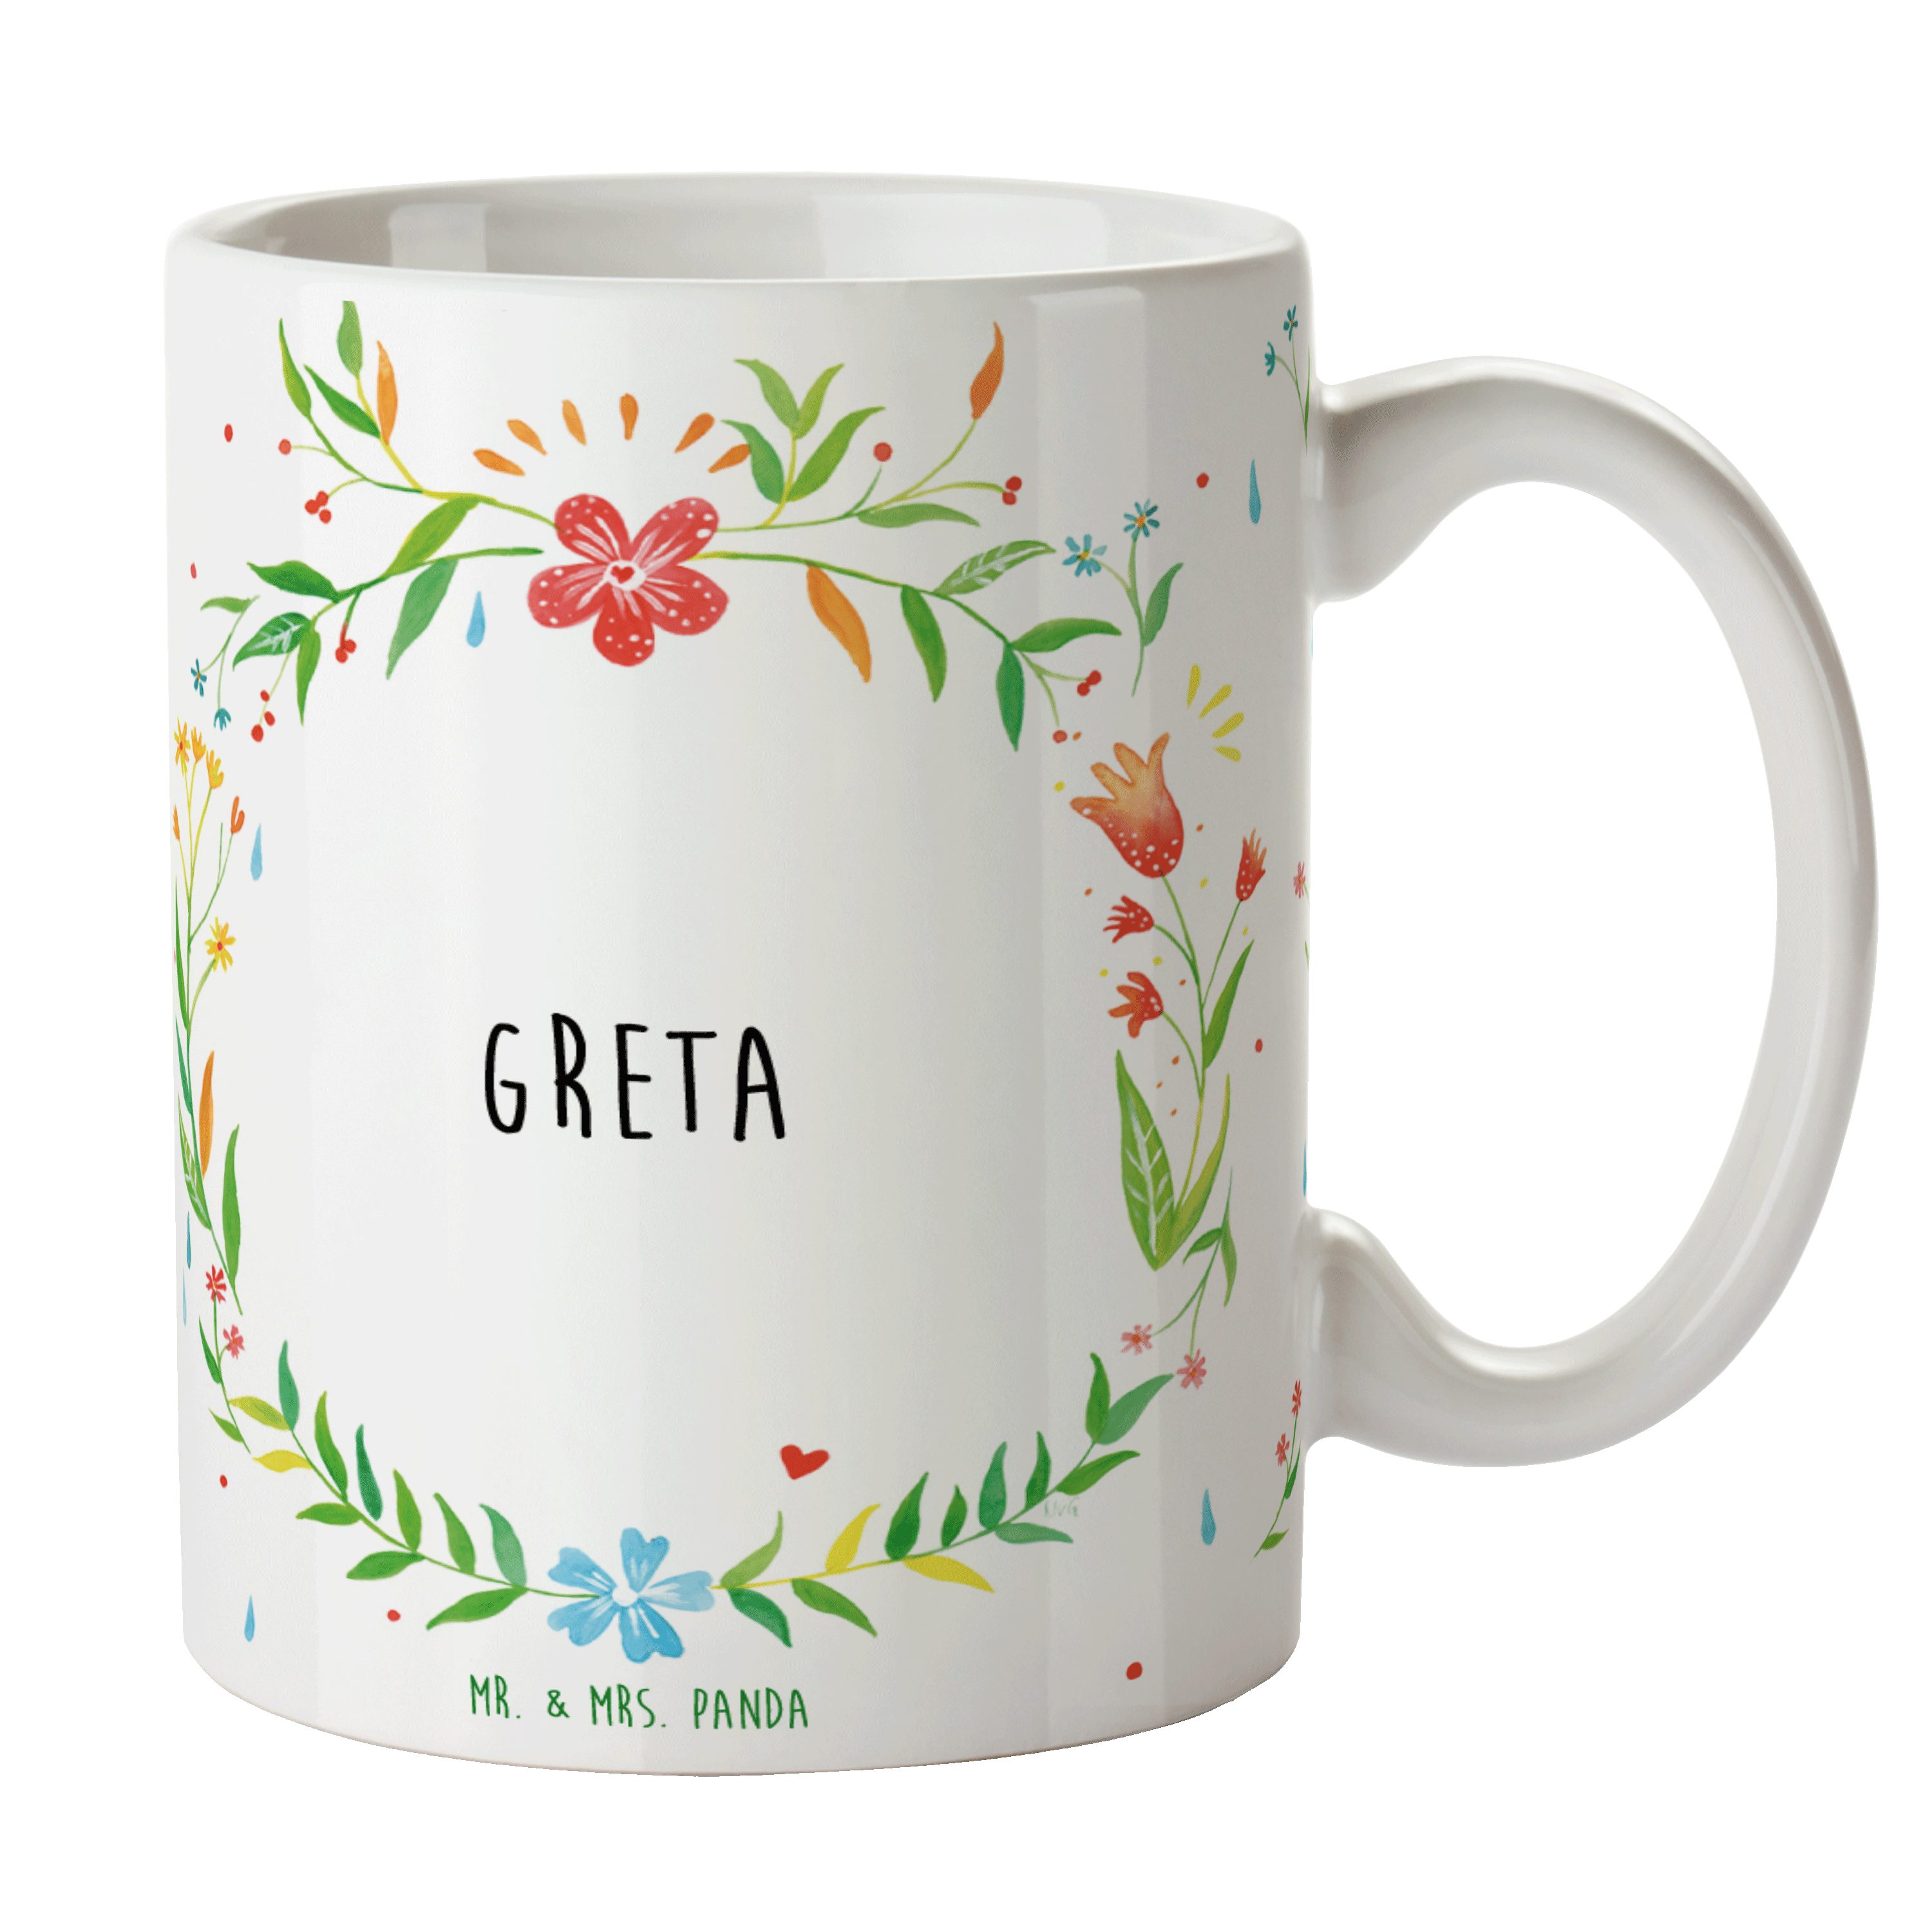 Mr. & Mrs. Panda Tasse Greta - Geschenk, Kaffeetasse, Büro Tasse, Keramiktasse, Porzellantas, Keramik